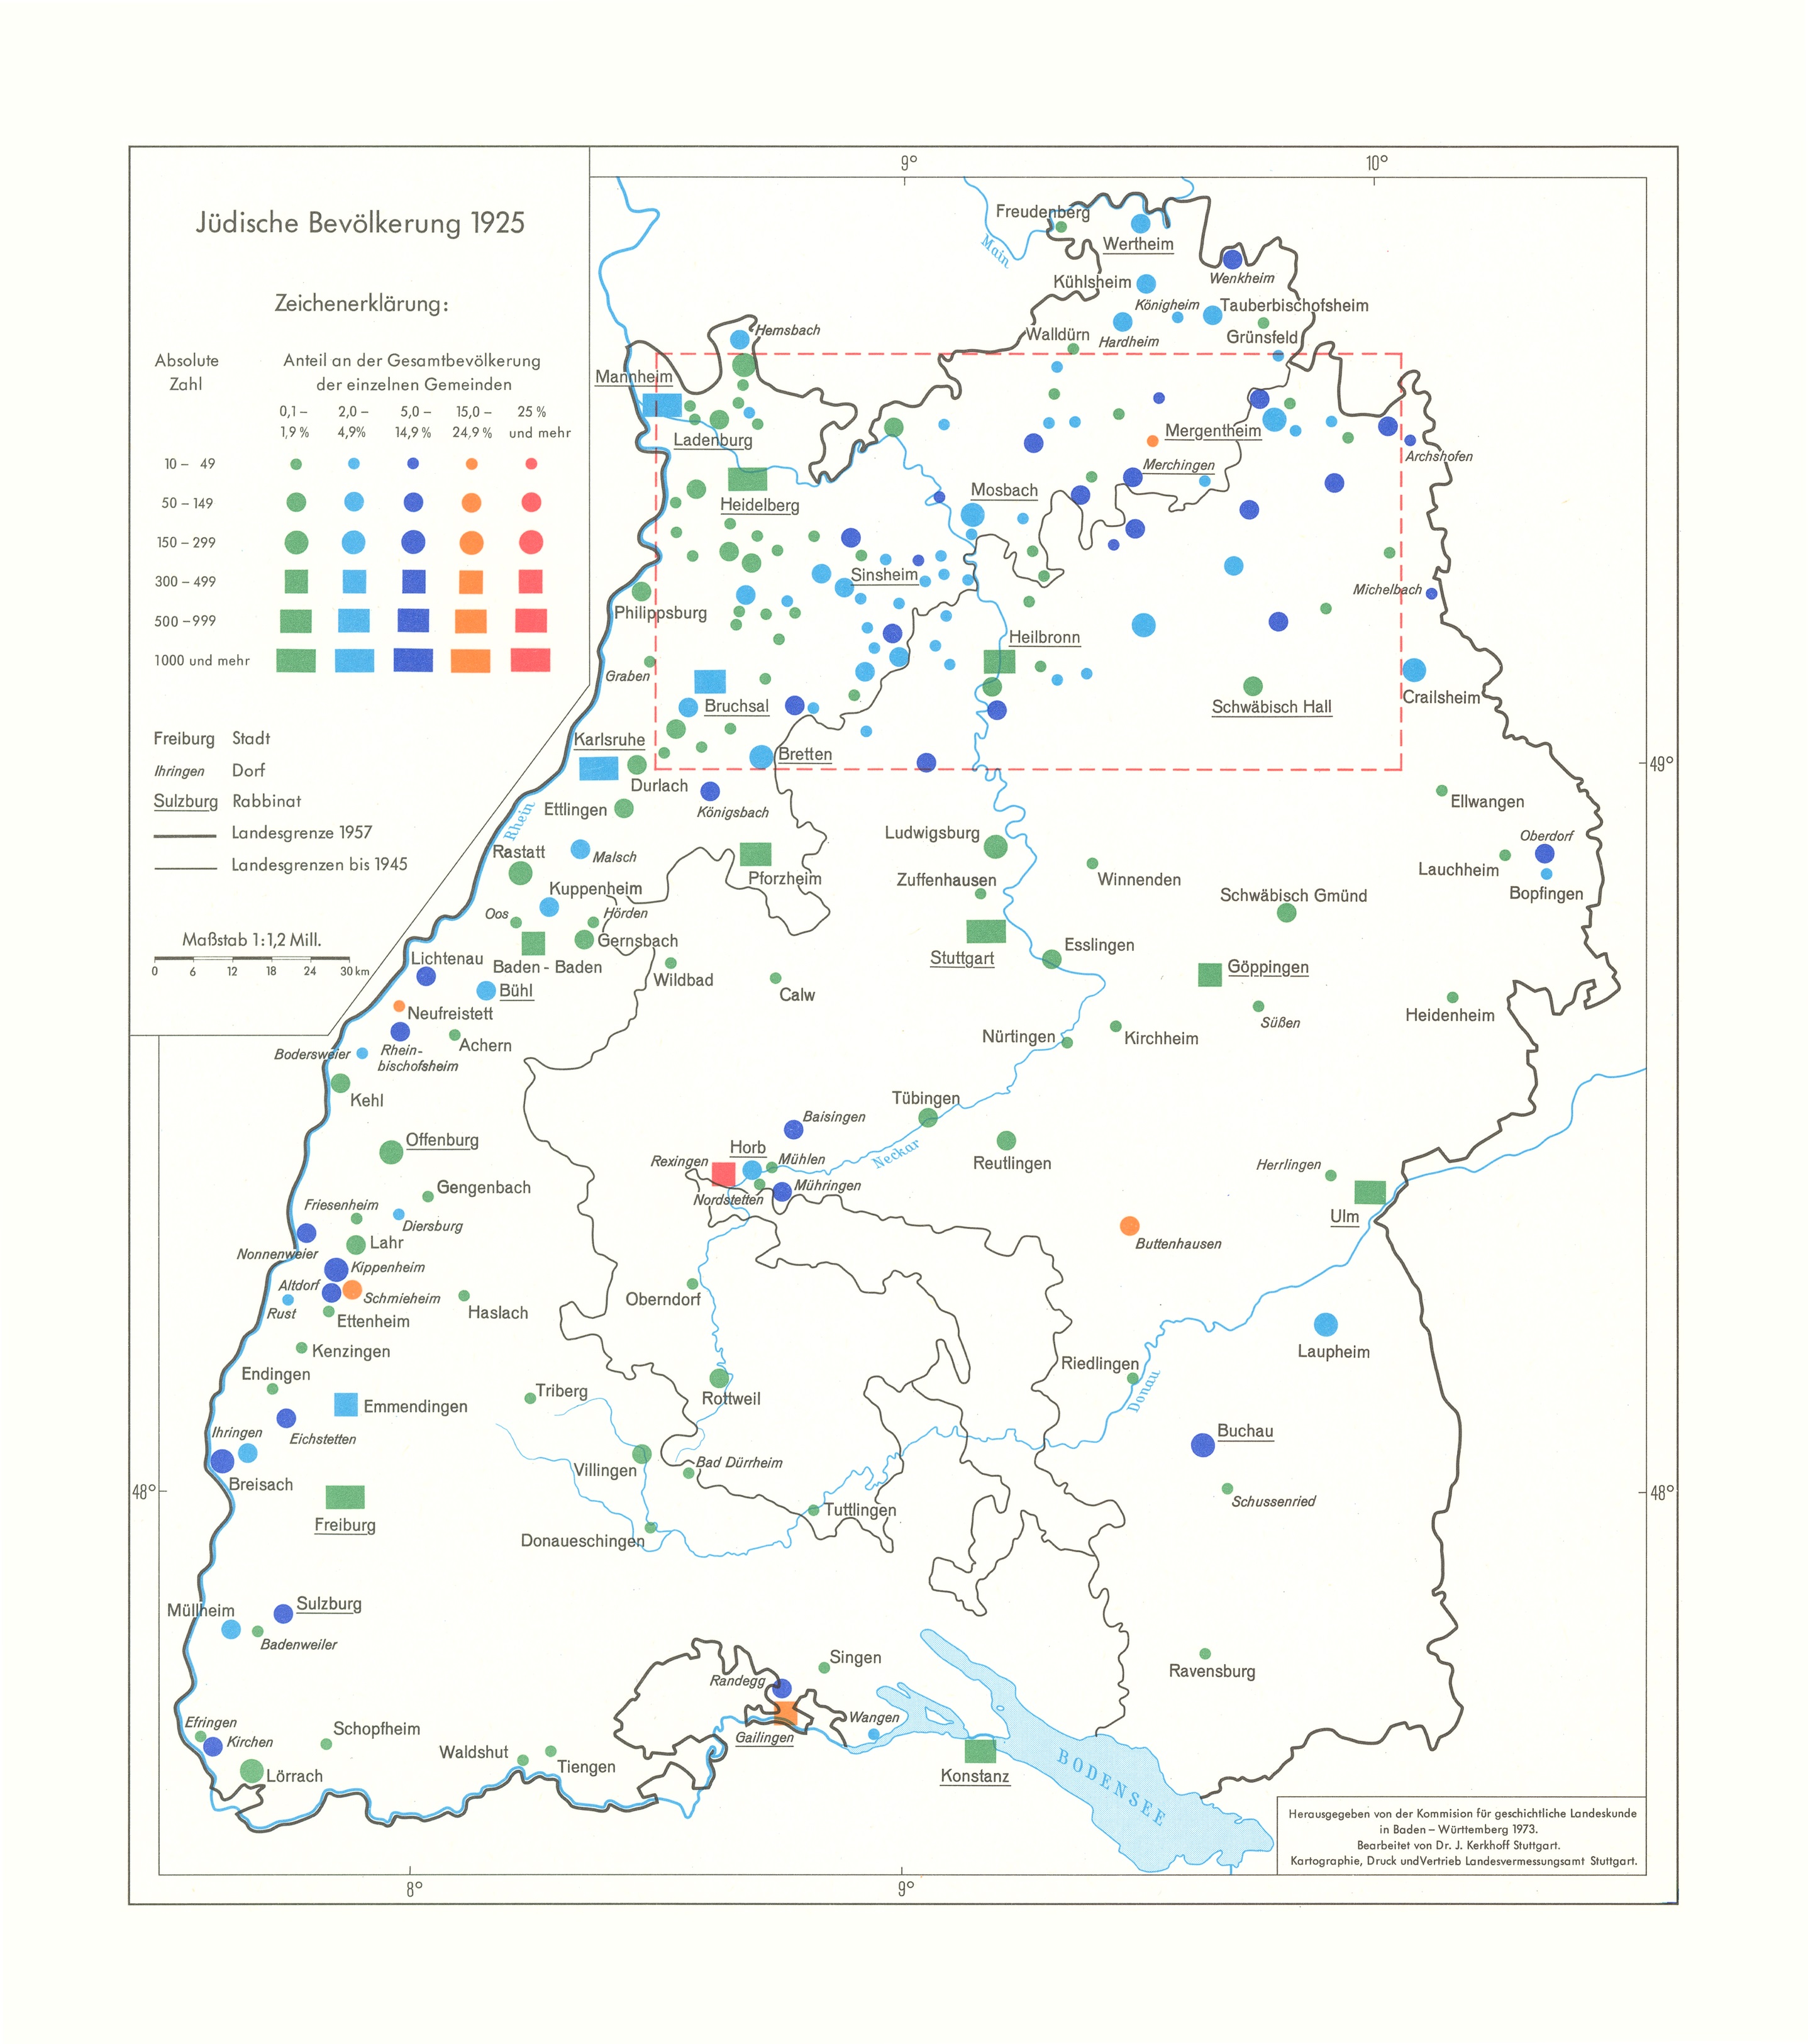 Karte A 4.1 Judenniederlassungen von 1000 bis 1100